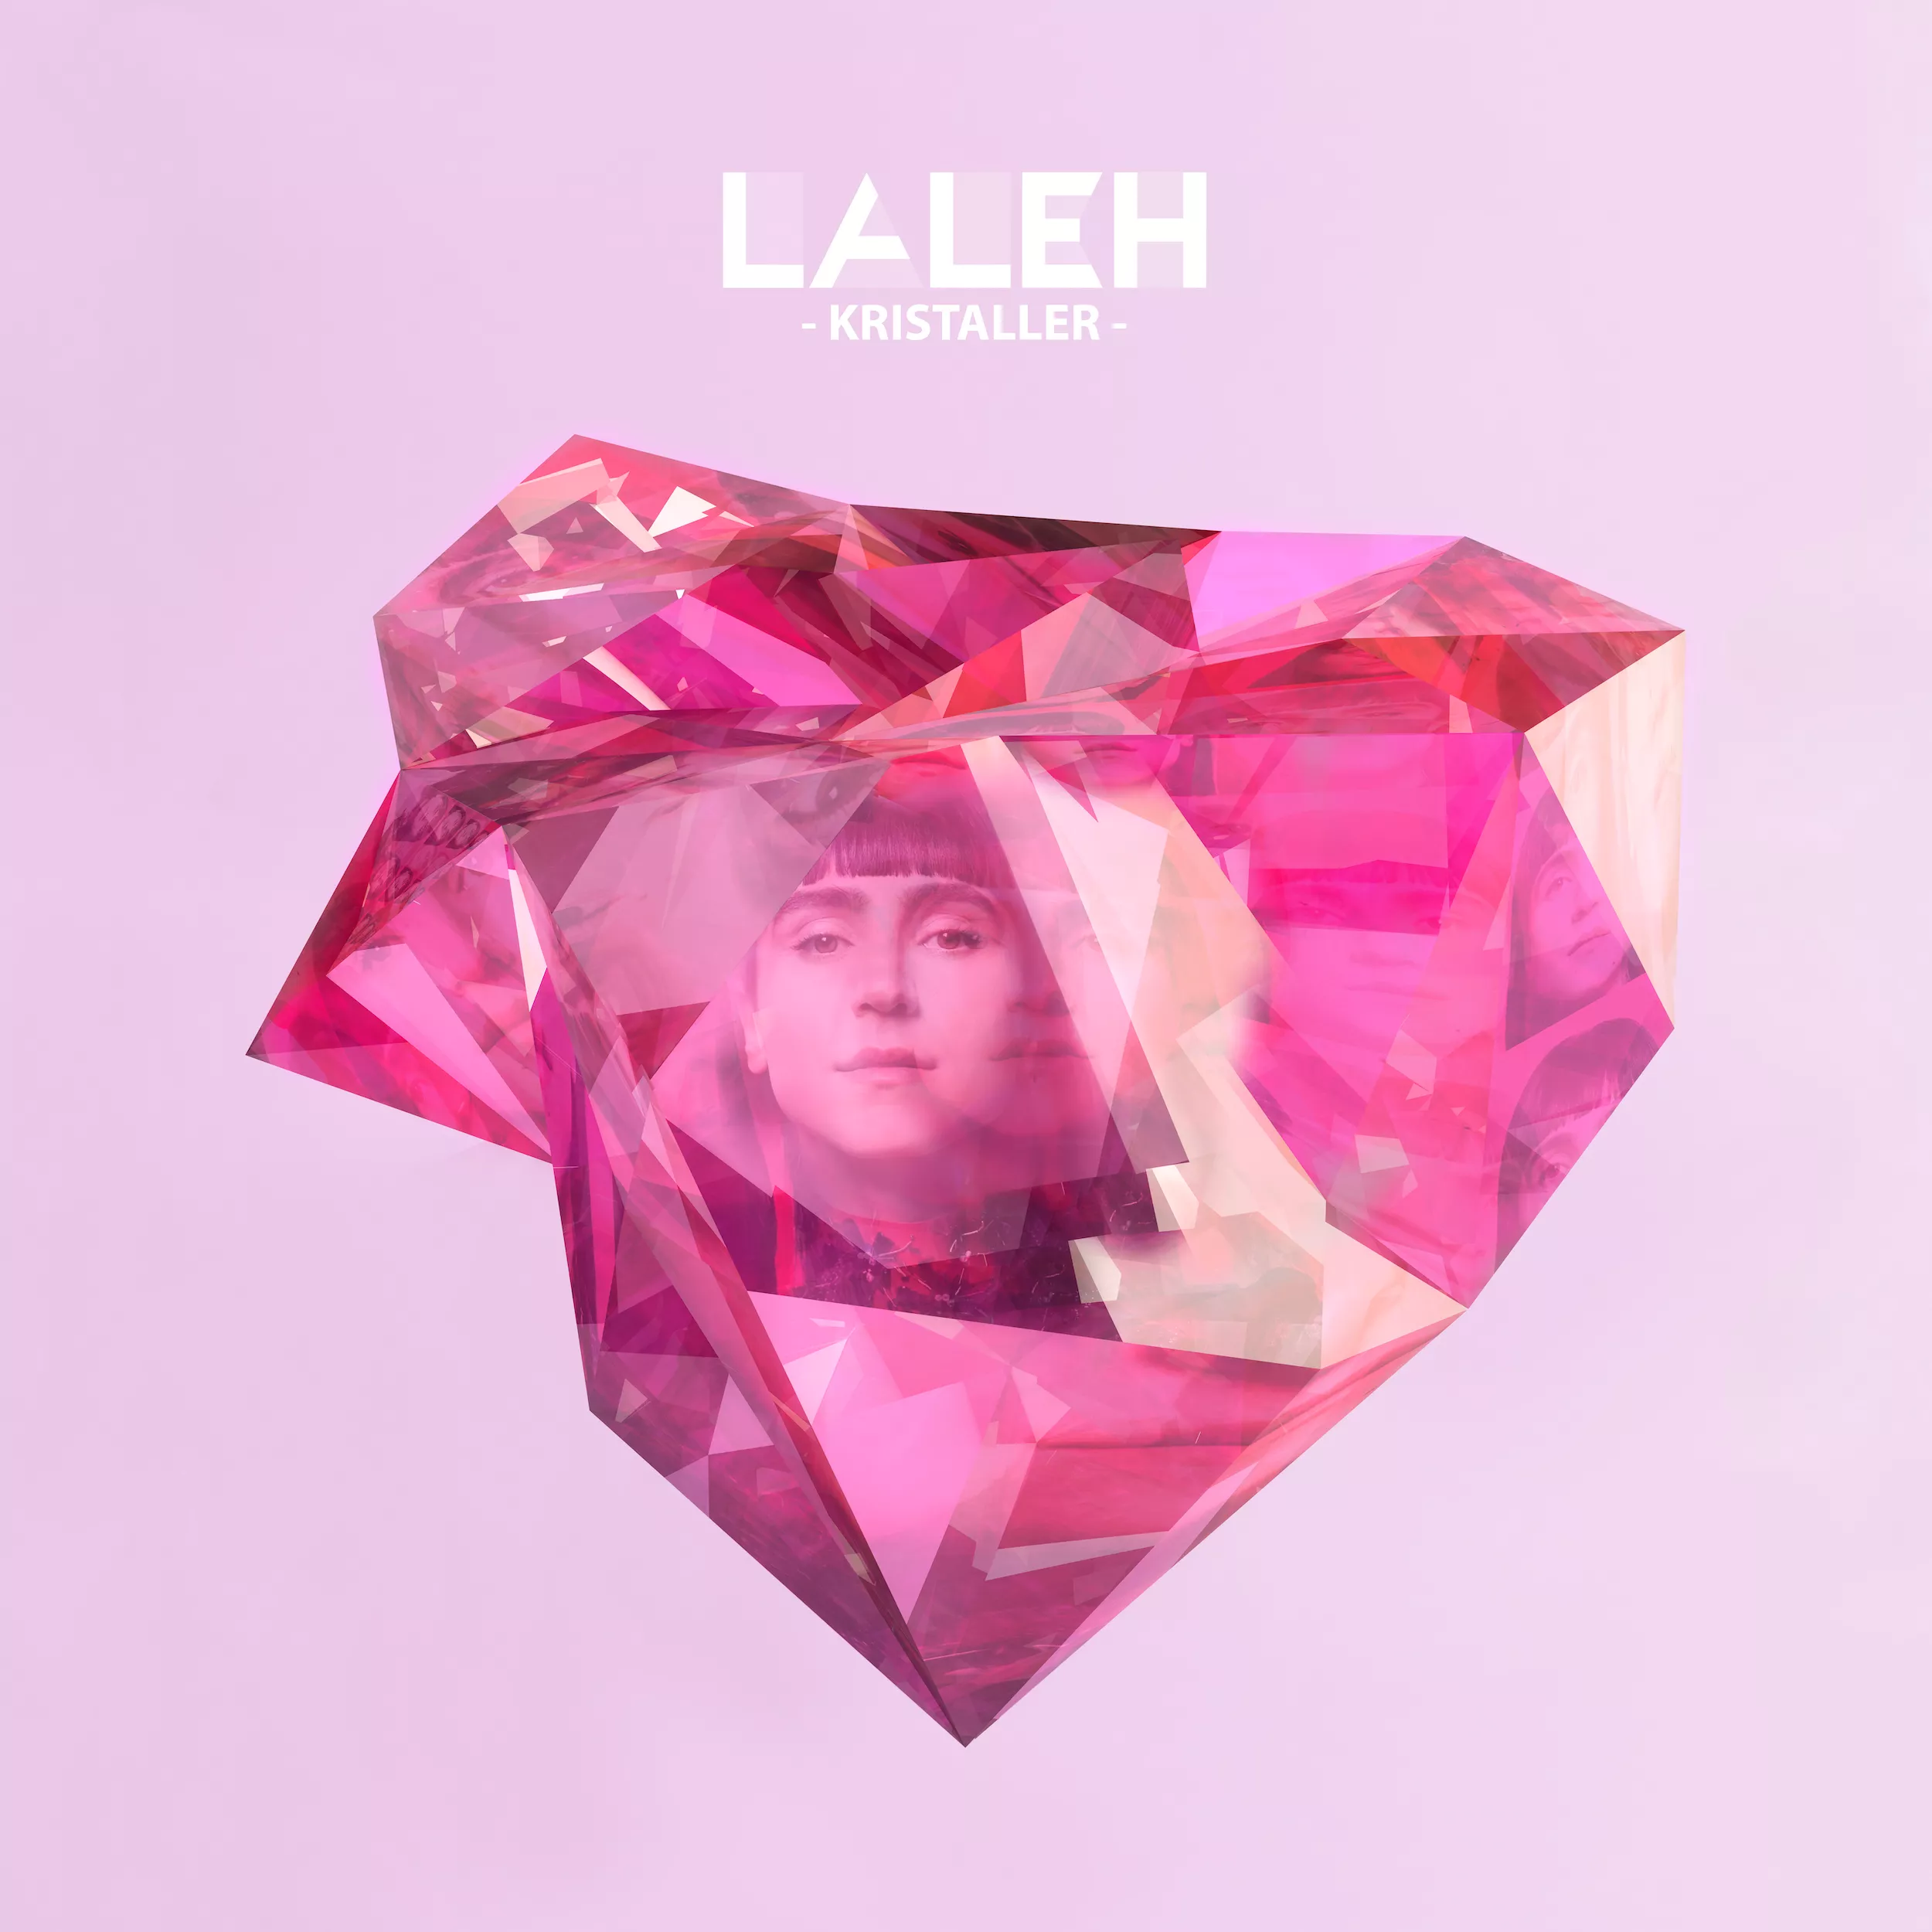 Kristaller - Laleh